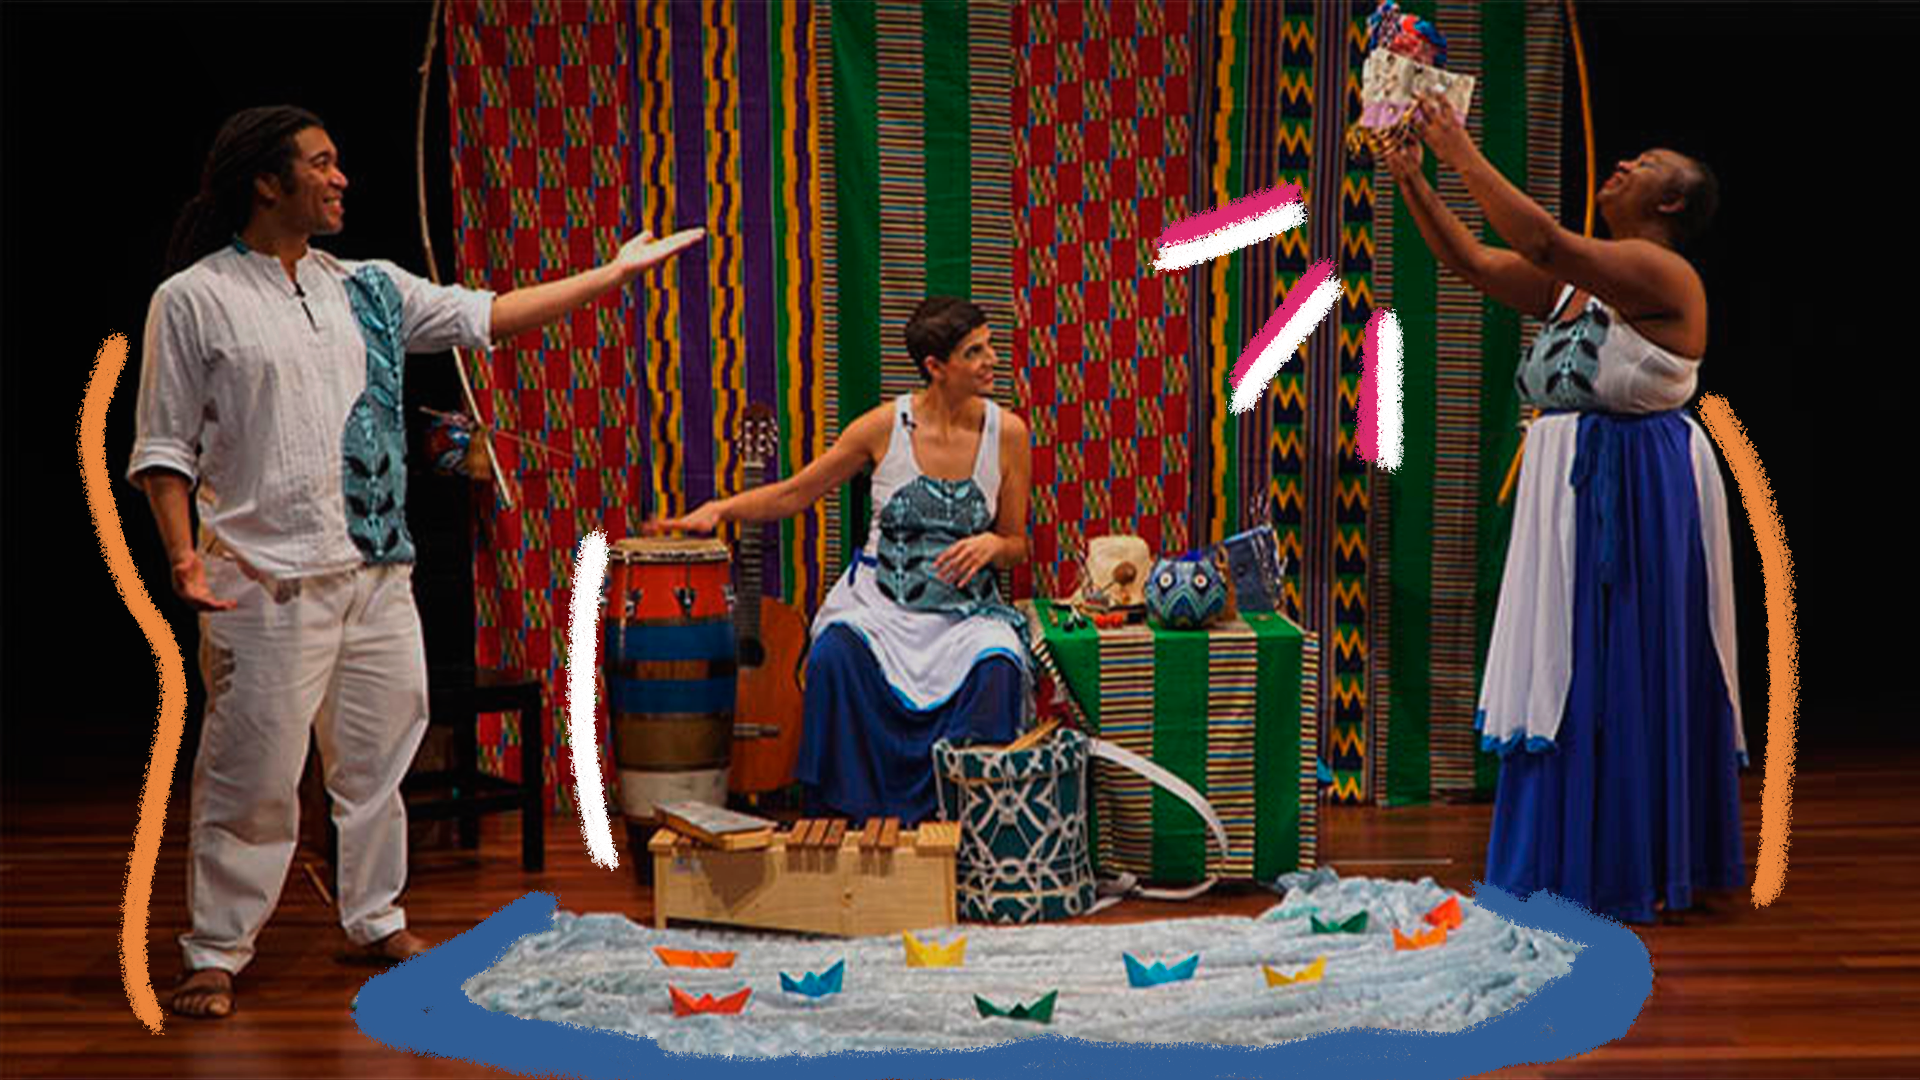 Cena da peça Canto das águas. Um homem e duas mulheres estão num cenário com elementos de origem africana e, no meio, entre eles, há um rio com barquinhos coloridos de papel